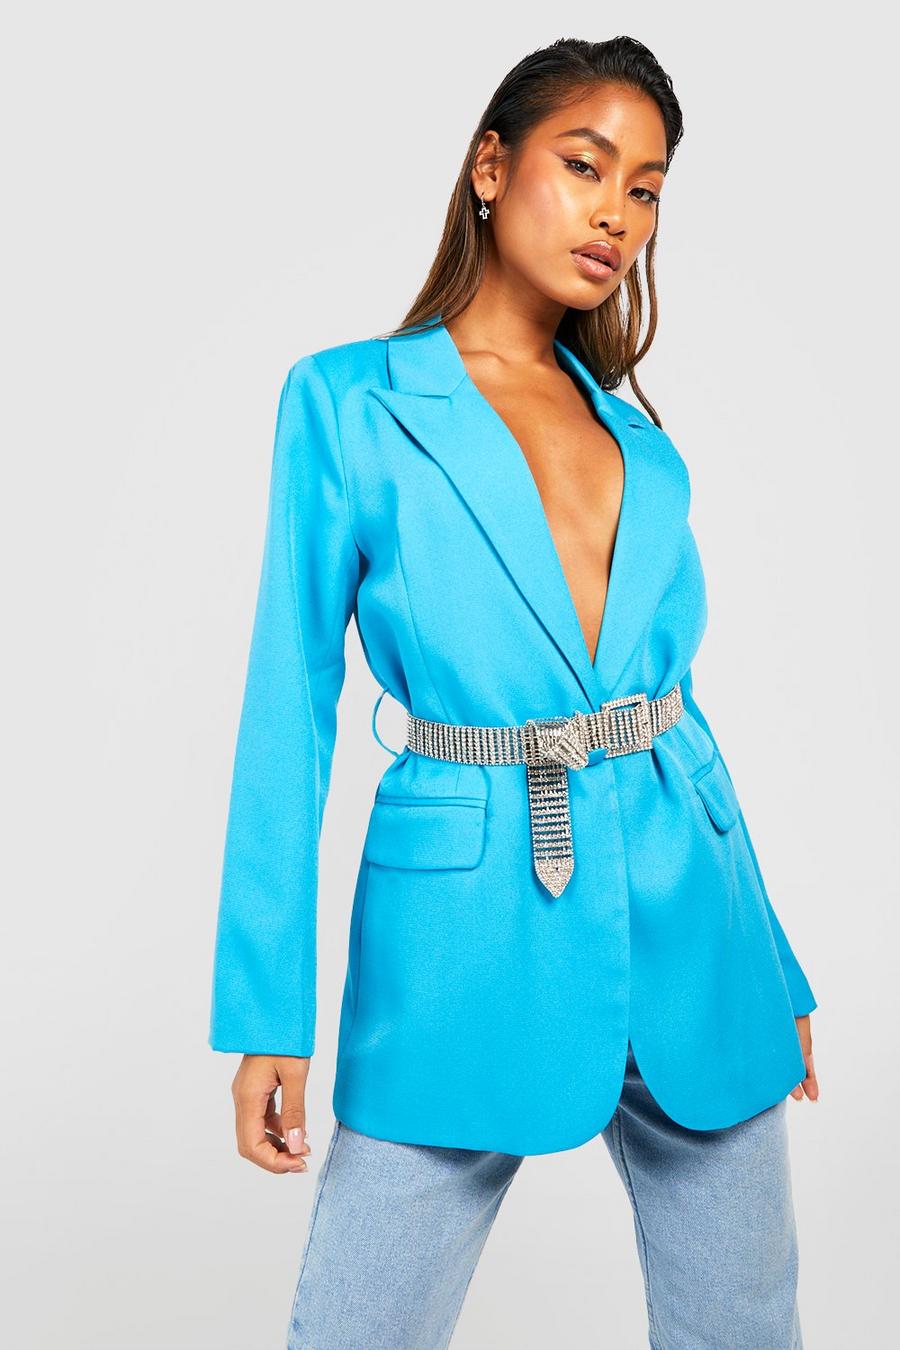 Azure blau Tailored Blazer With Diamante Belt